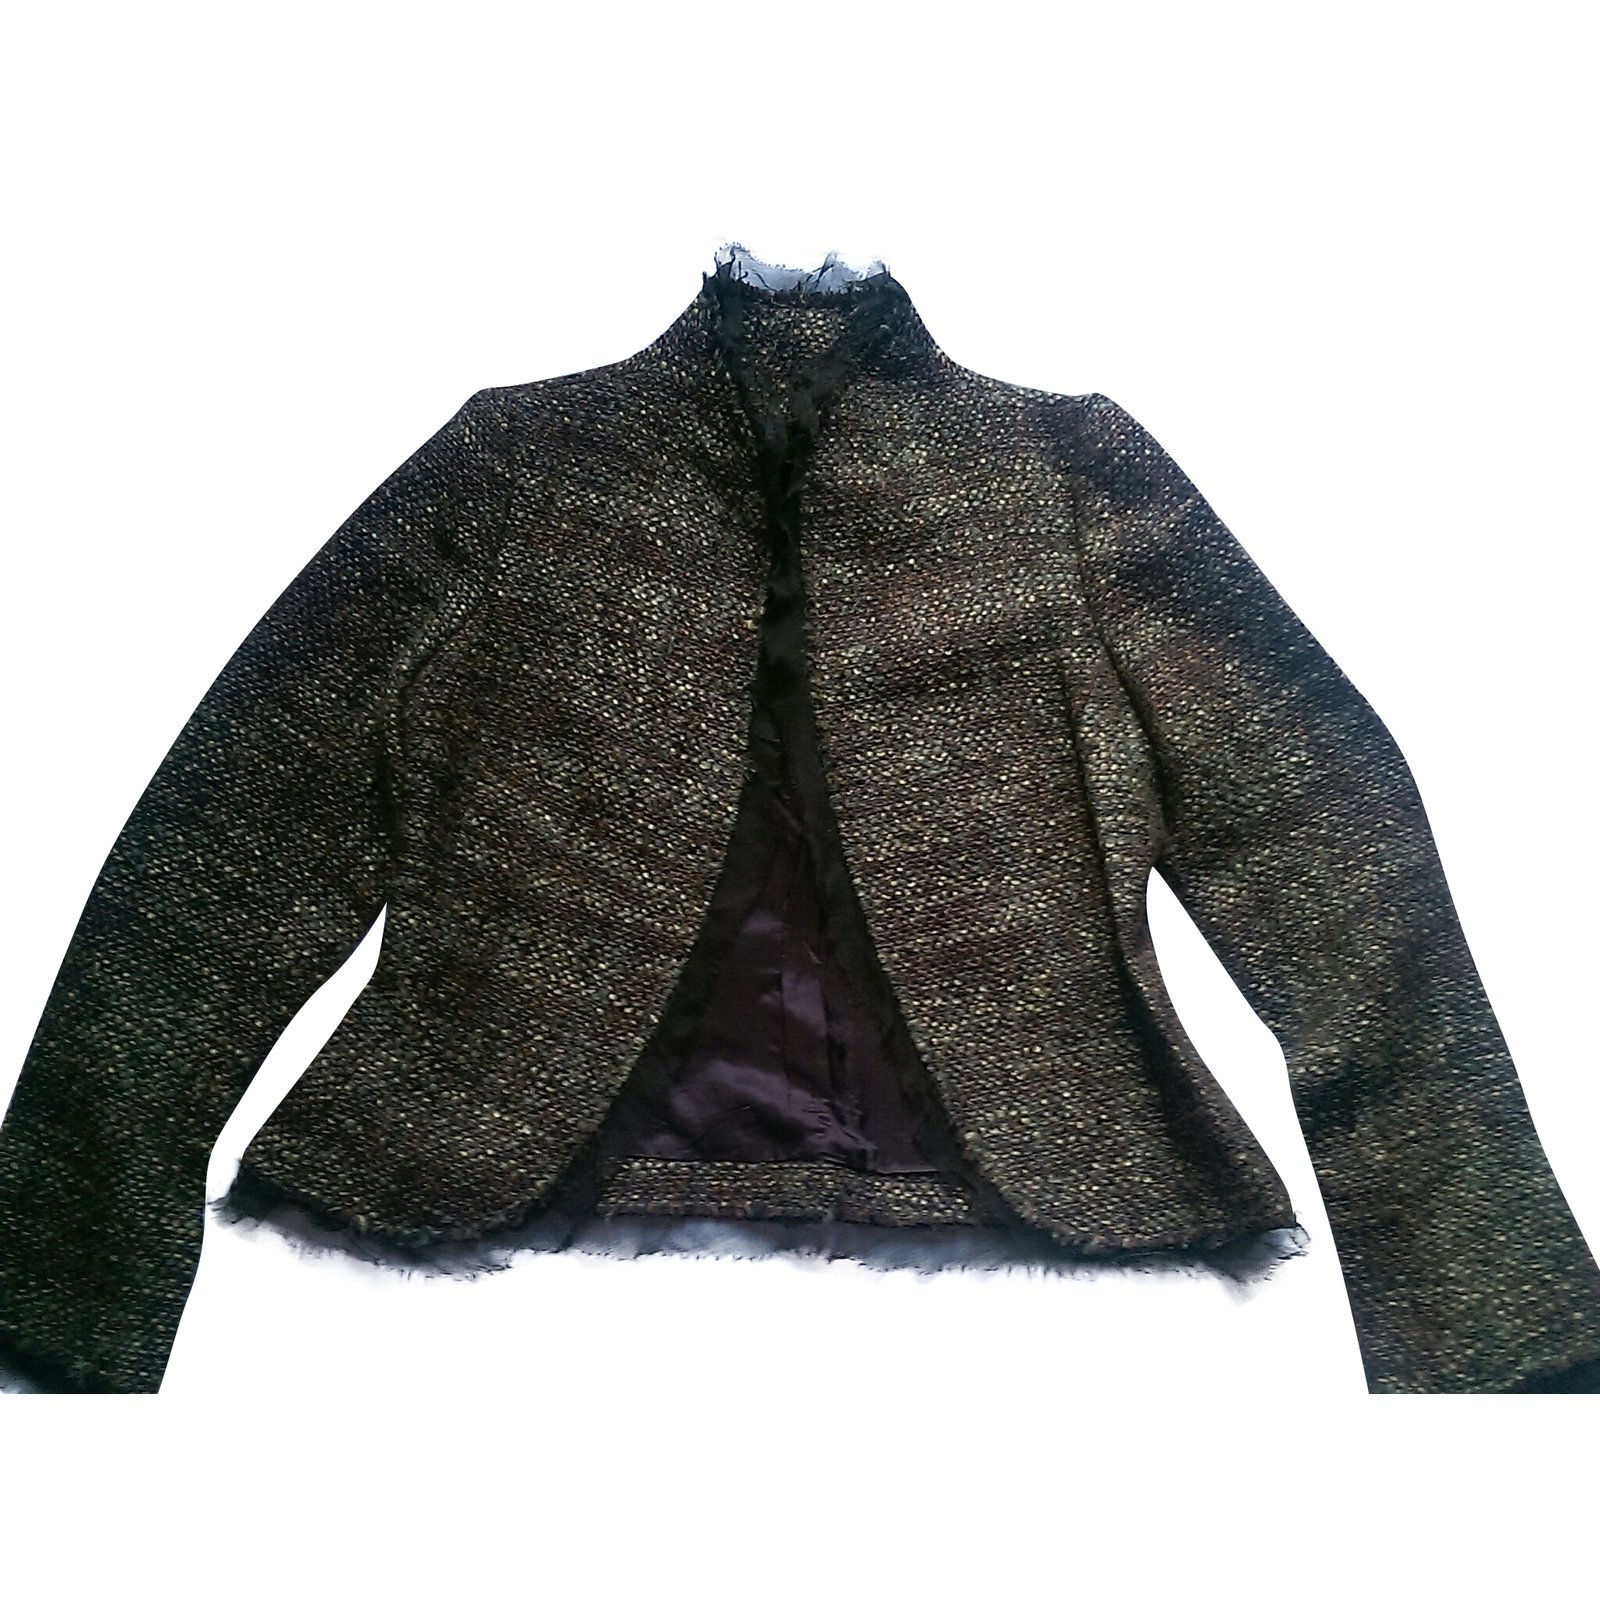 zara wool jacket